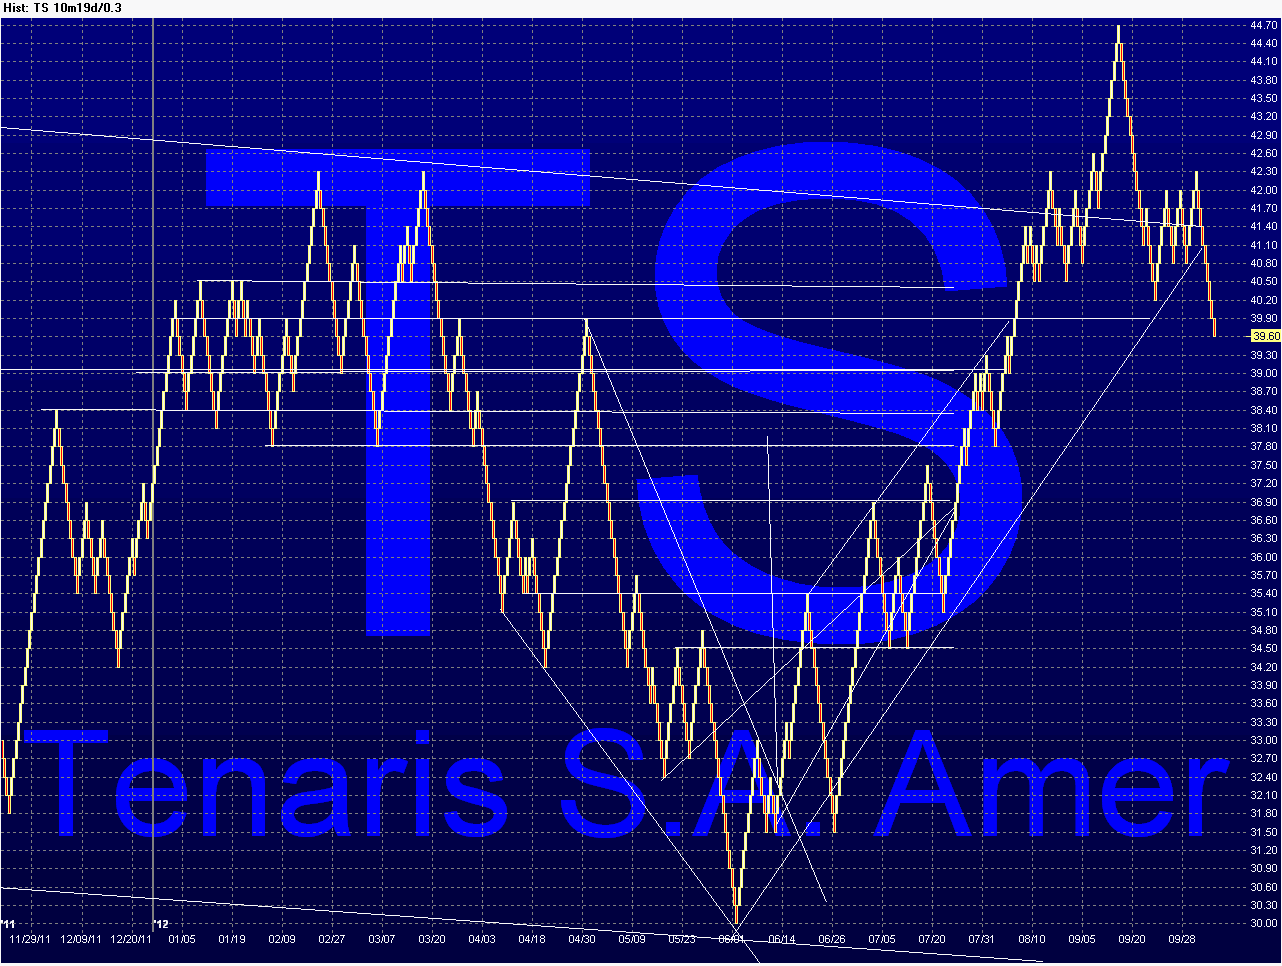 TS - Tenaris Chart_31